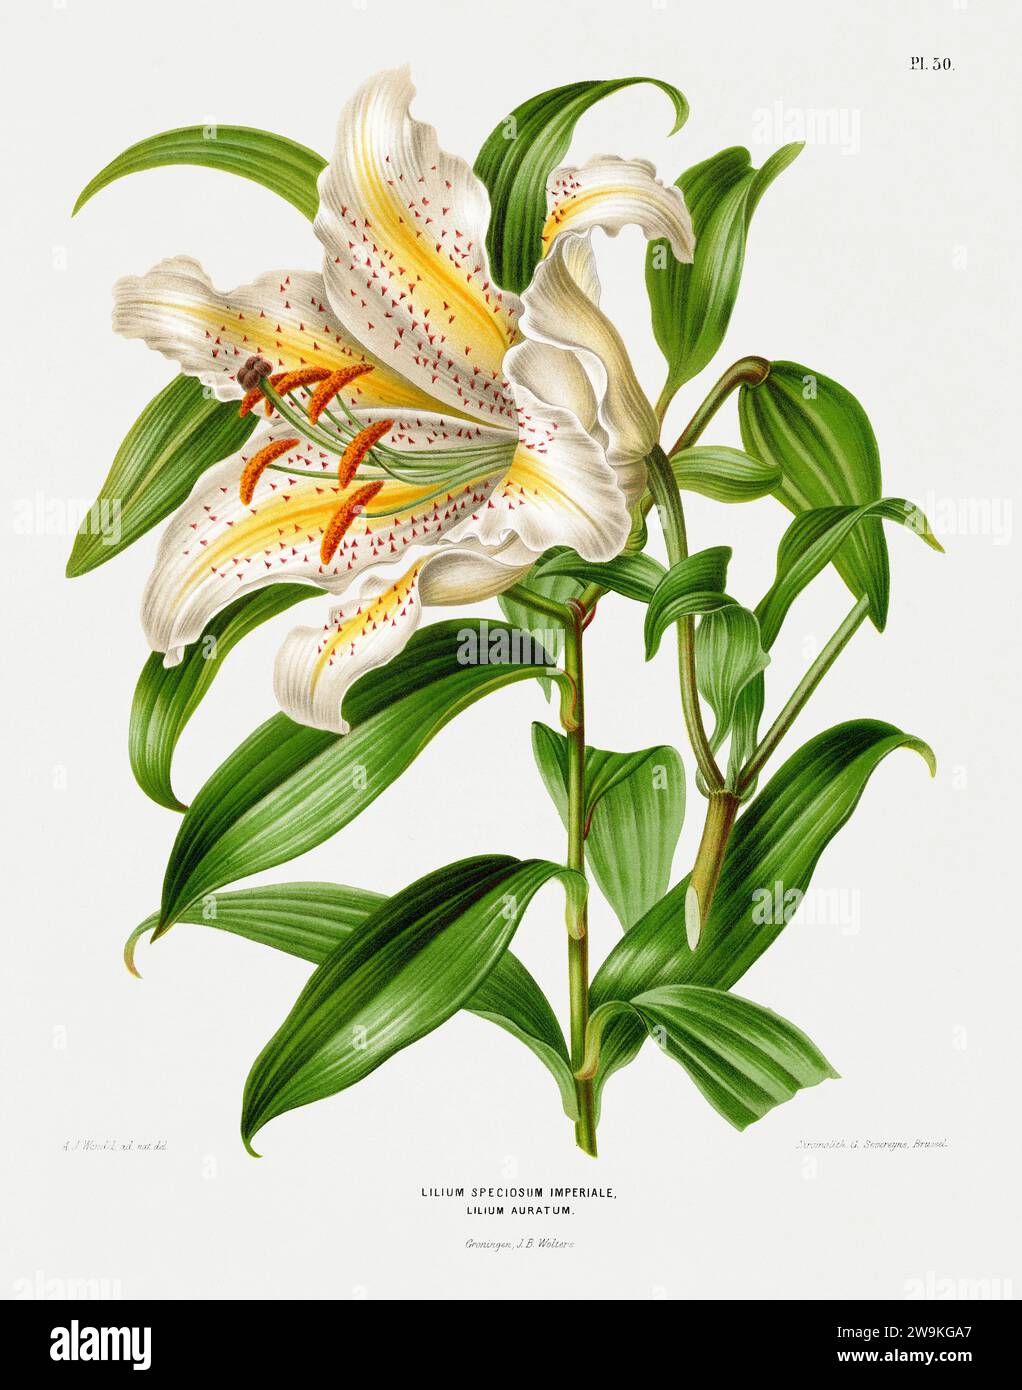 Illustration de fleur vintage. Illustration de livre botanique néerlandais. Circa 1880 Banque D'Images